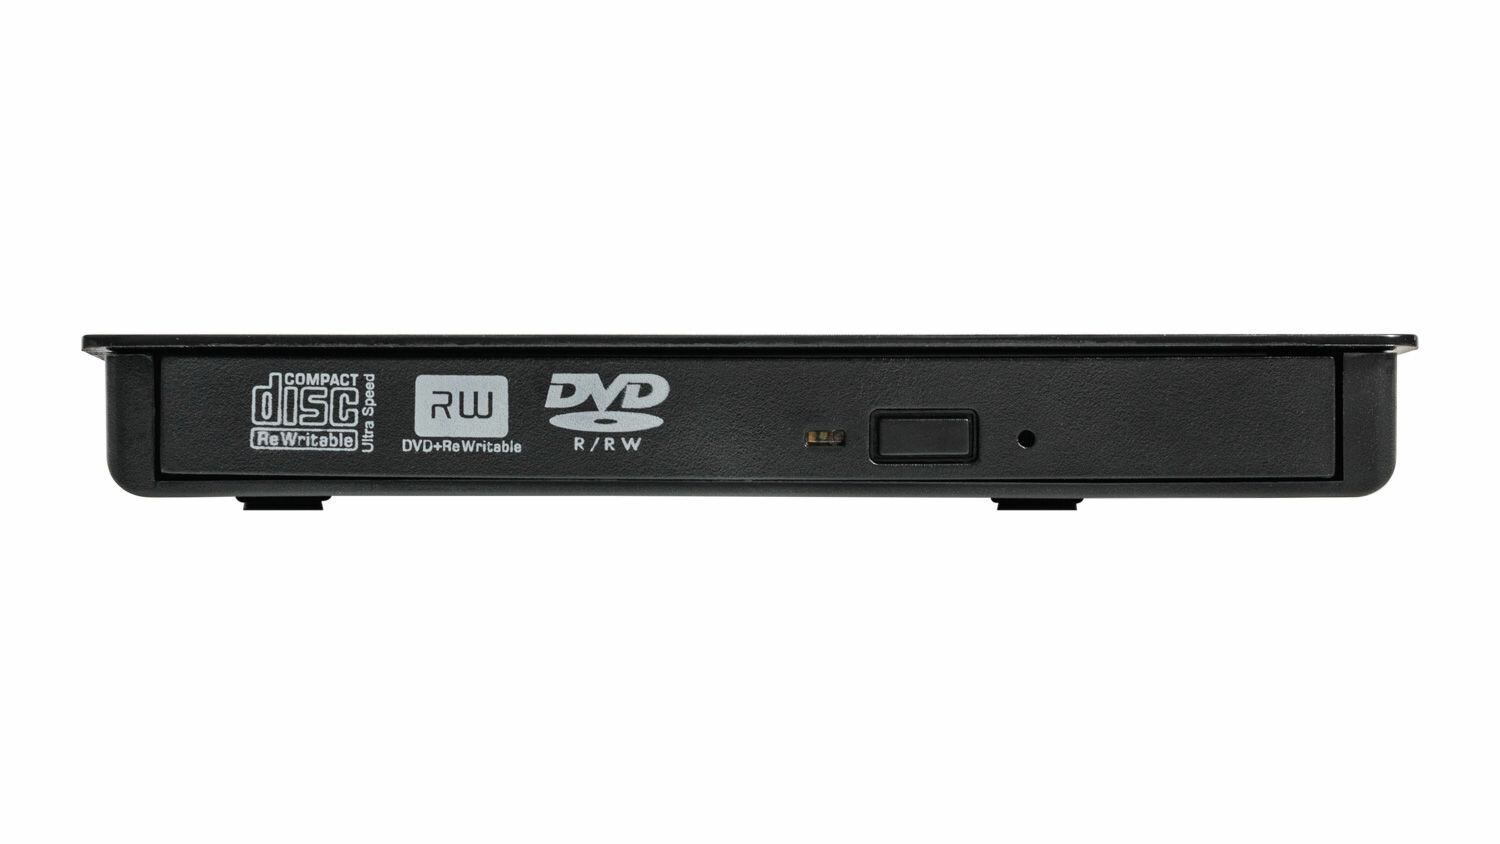 Внешний CD-ROM/RW DVD-ROM/RW привод / оптический привод / внешний дисковод / DVD-RW CD-RW DVD/CD-ROM DVD-USB-02 черный USB 30 USB Type-C